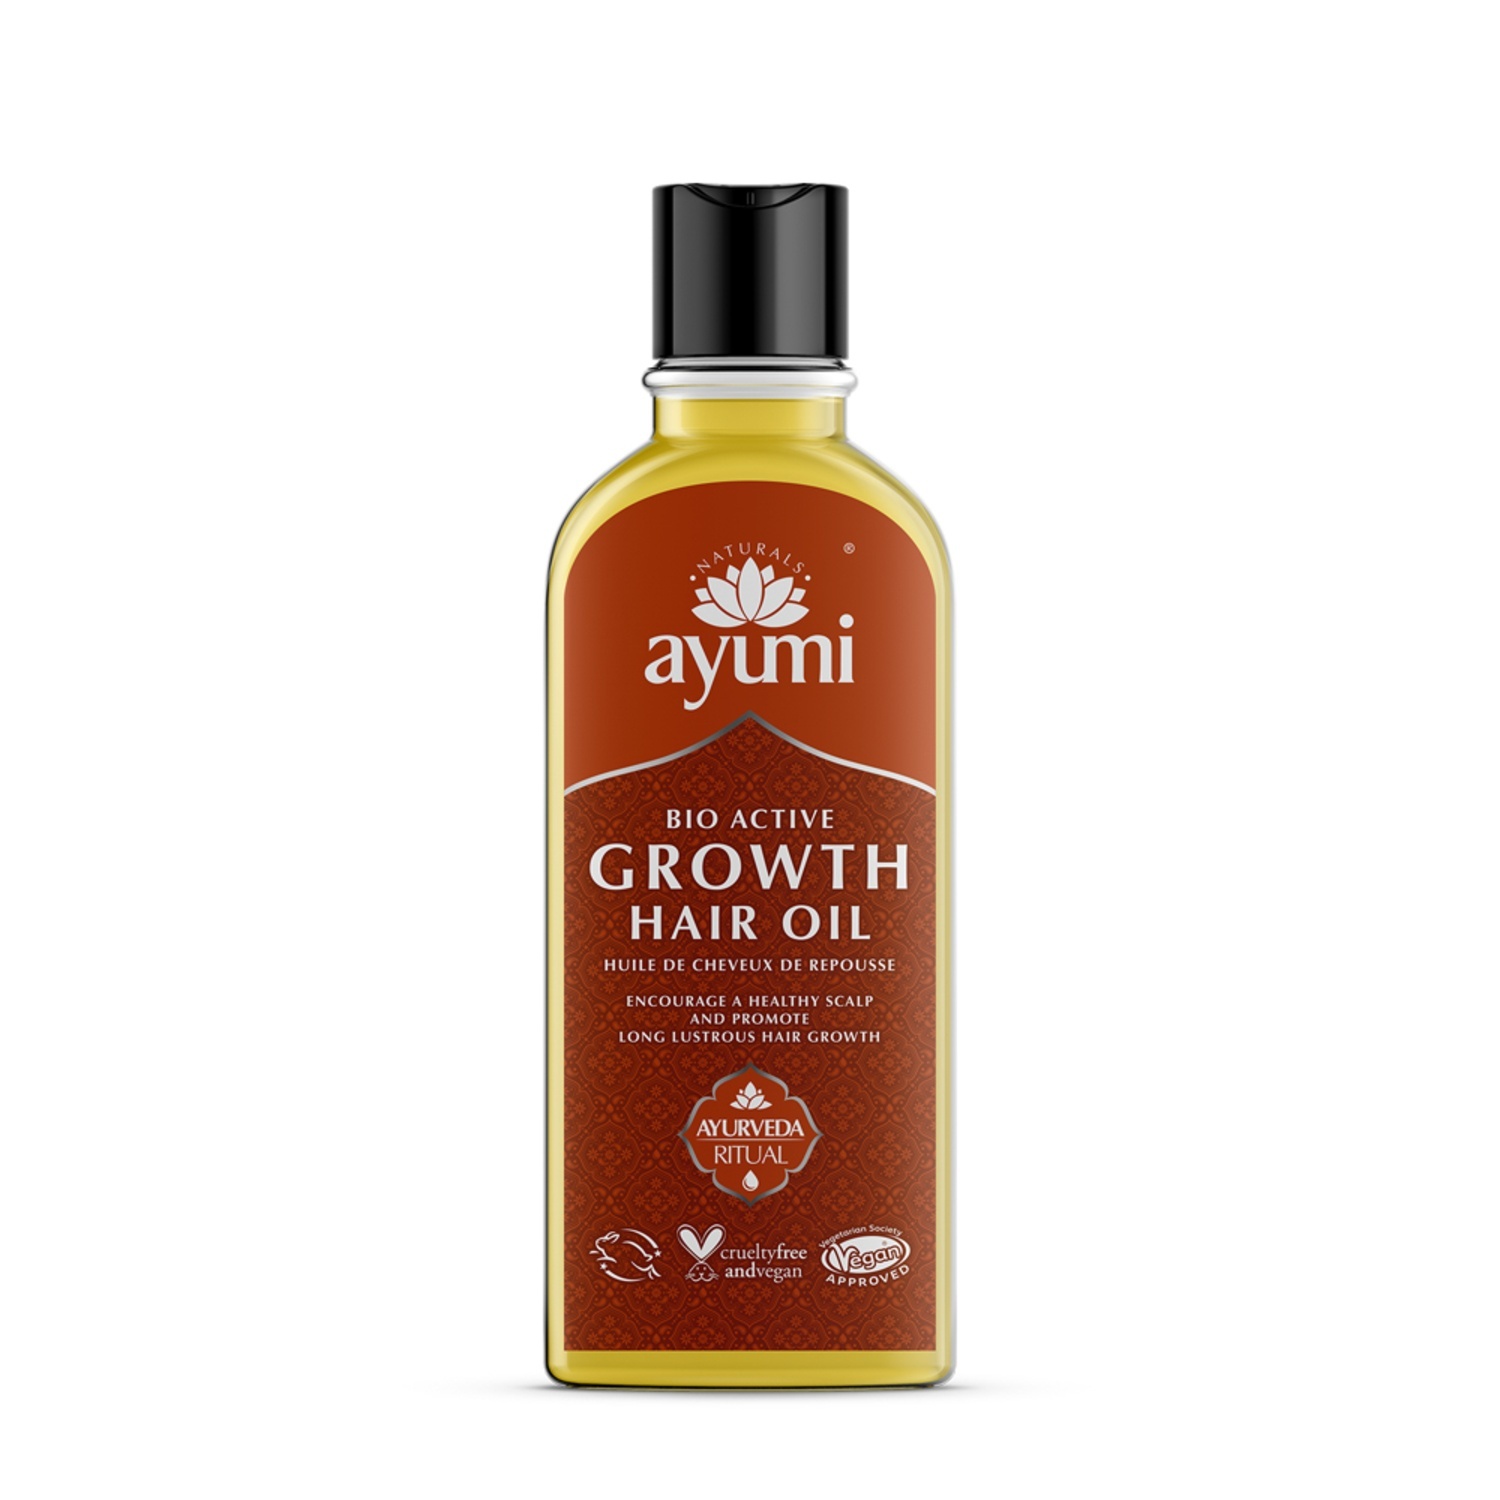 Ayumi 100% Natural Growth Hair Oil